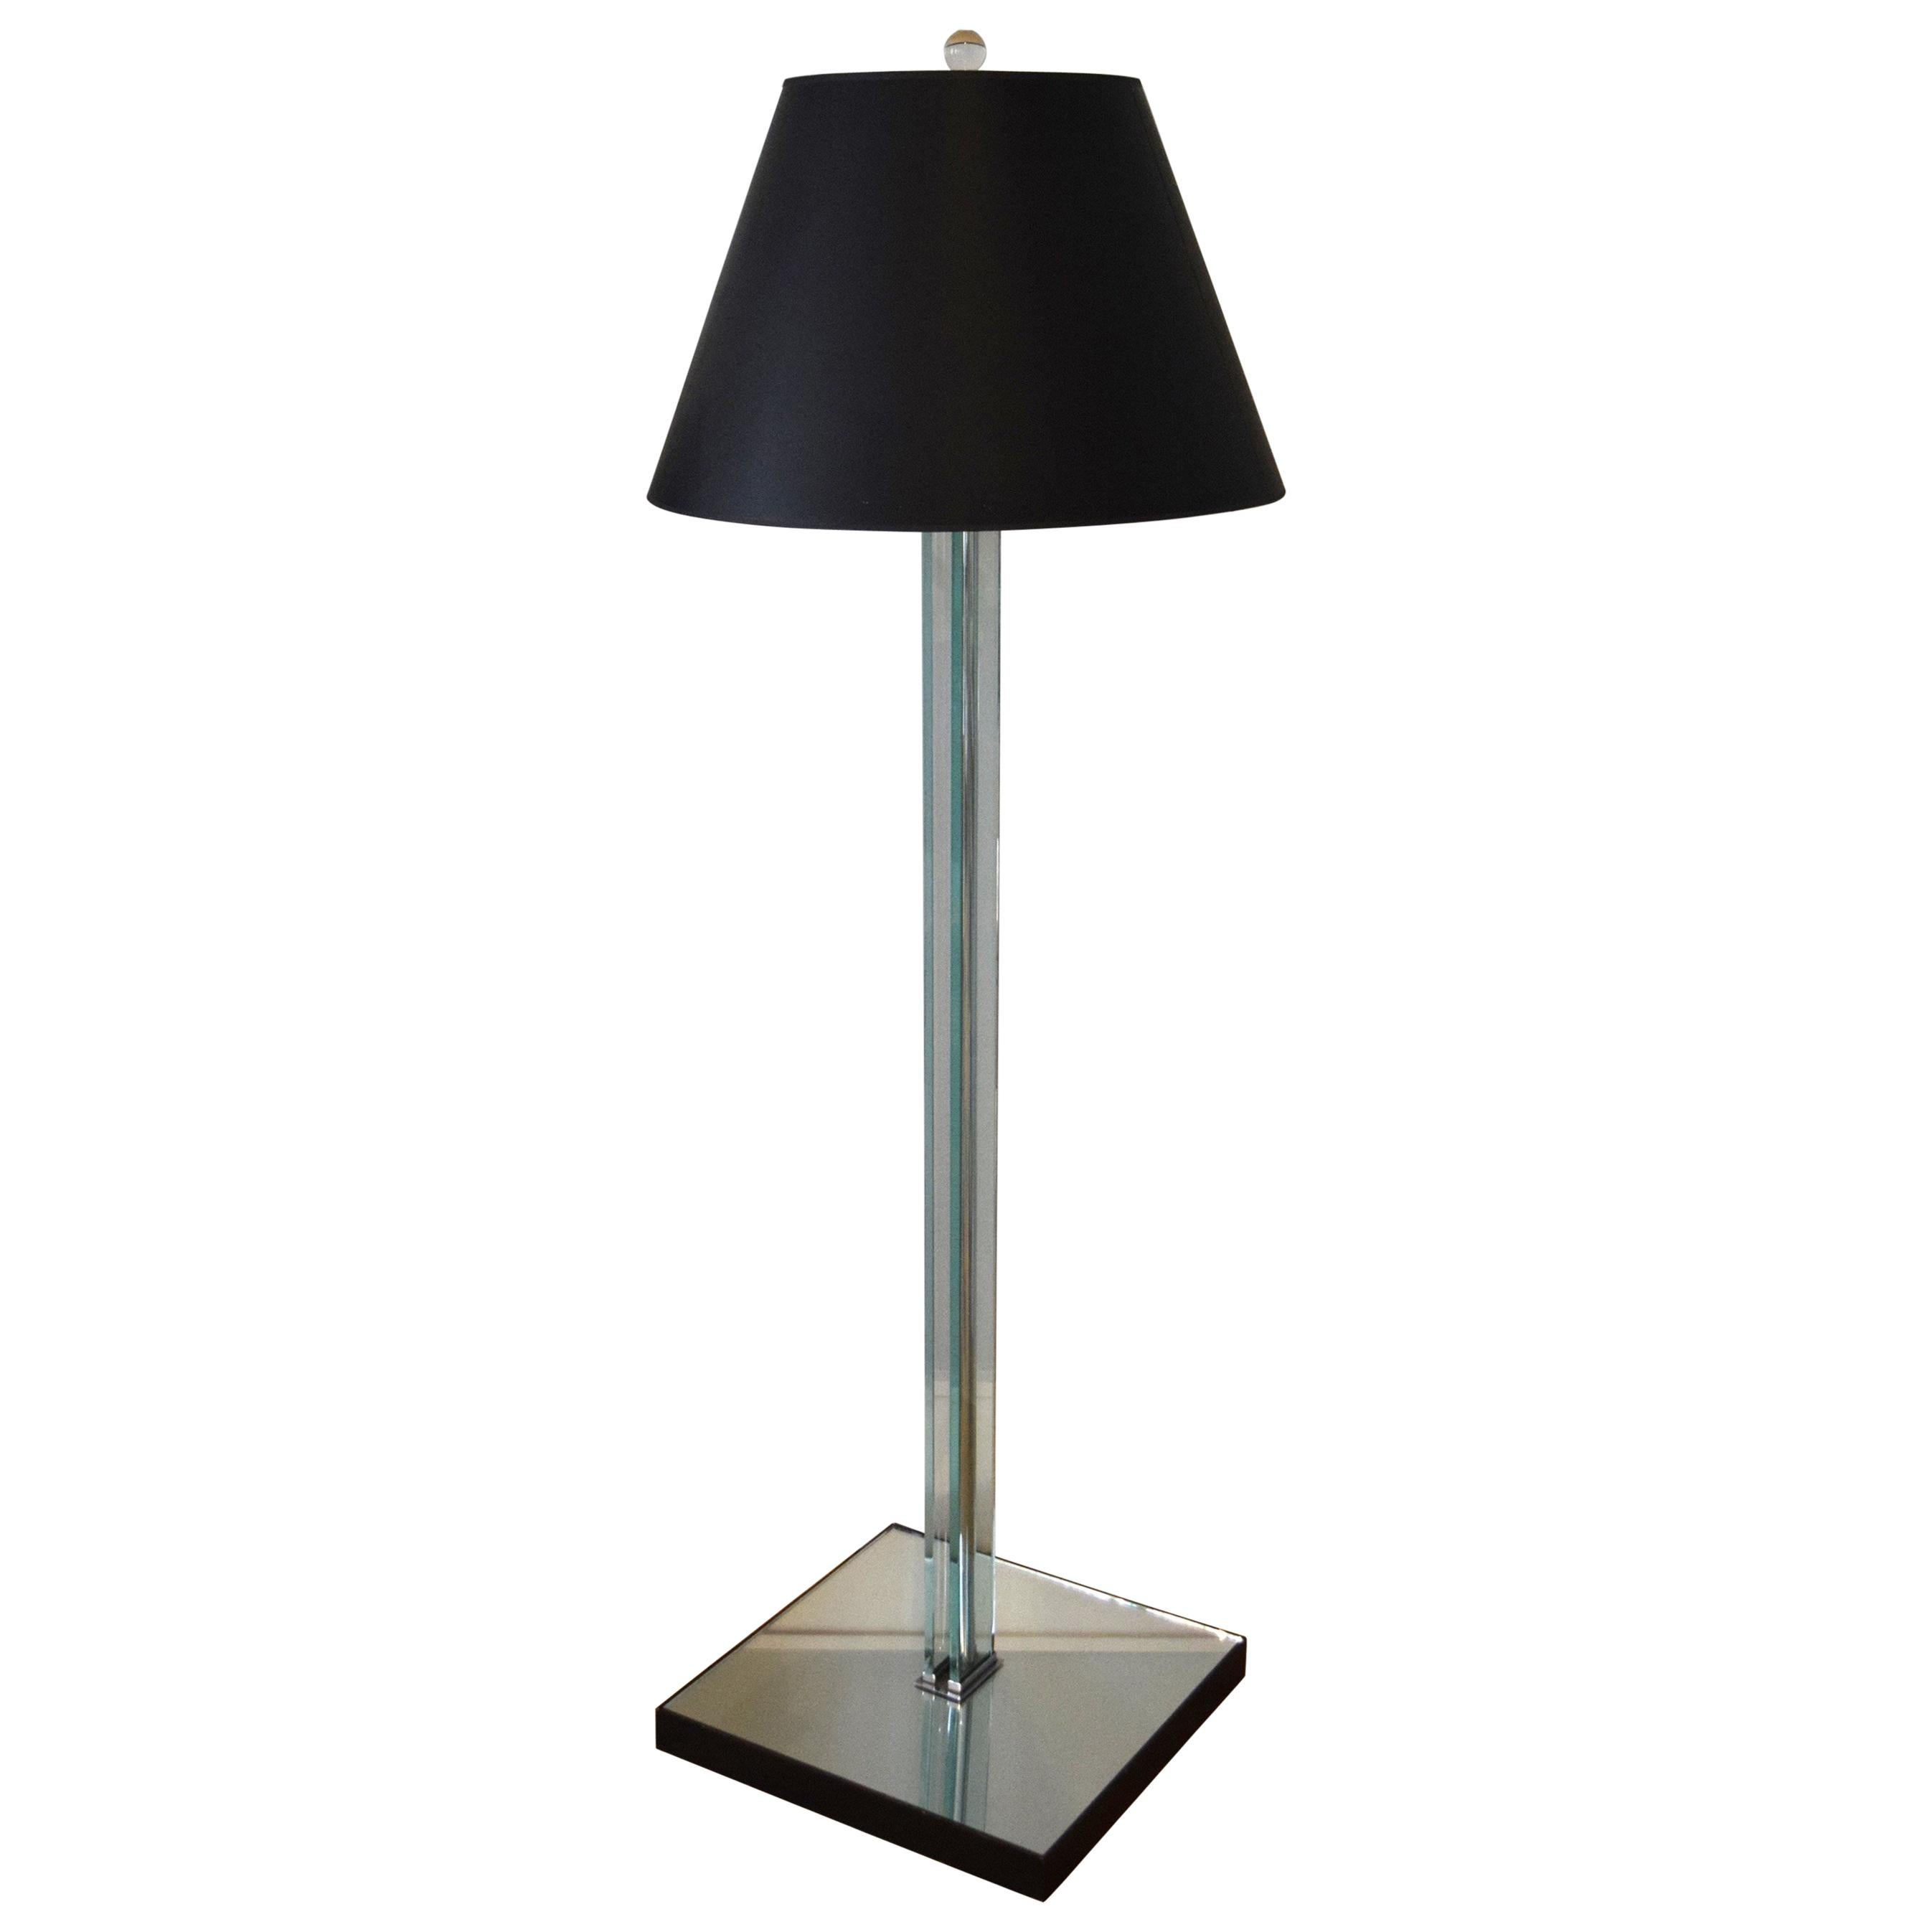 Modernist 1930s Floor Lamp